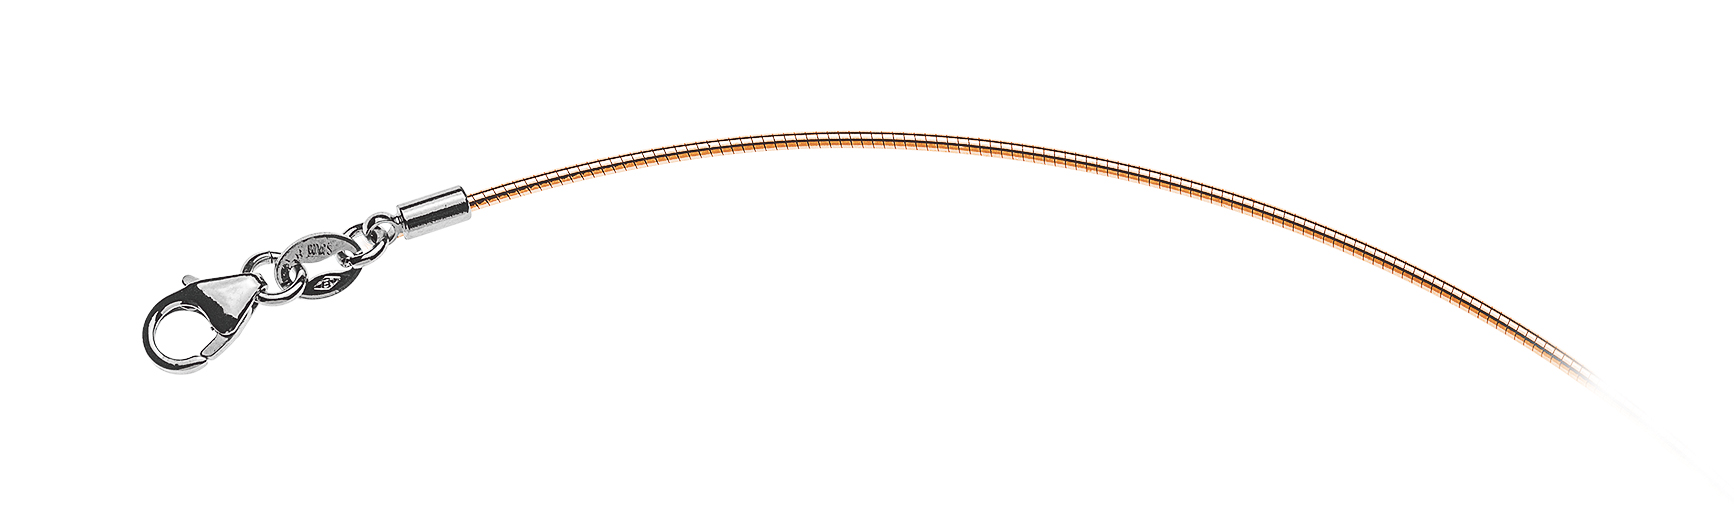 AURONOS Prestige Halskette Roségold 18K Omegakette 40cm 1.0mm